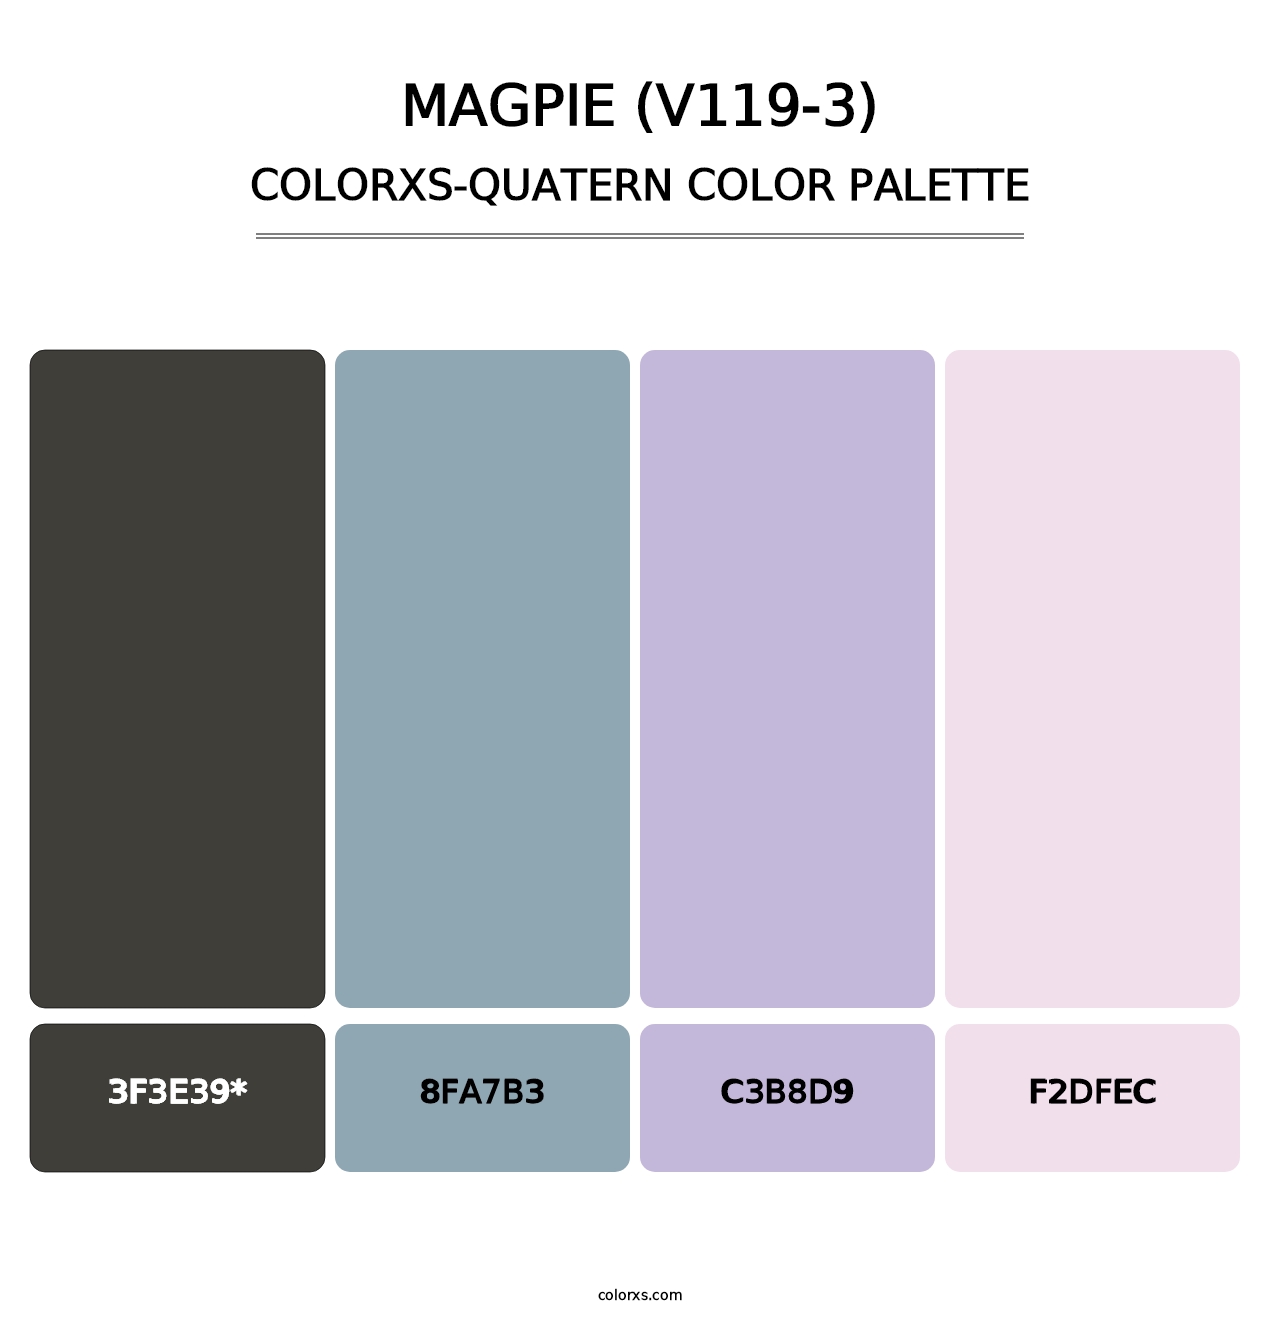 Magpie (V119-3) - Colorxs Quatern Palette